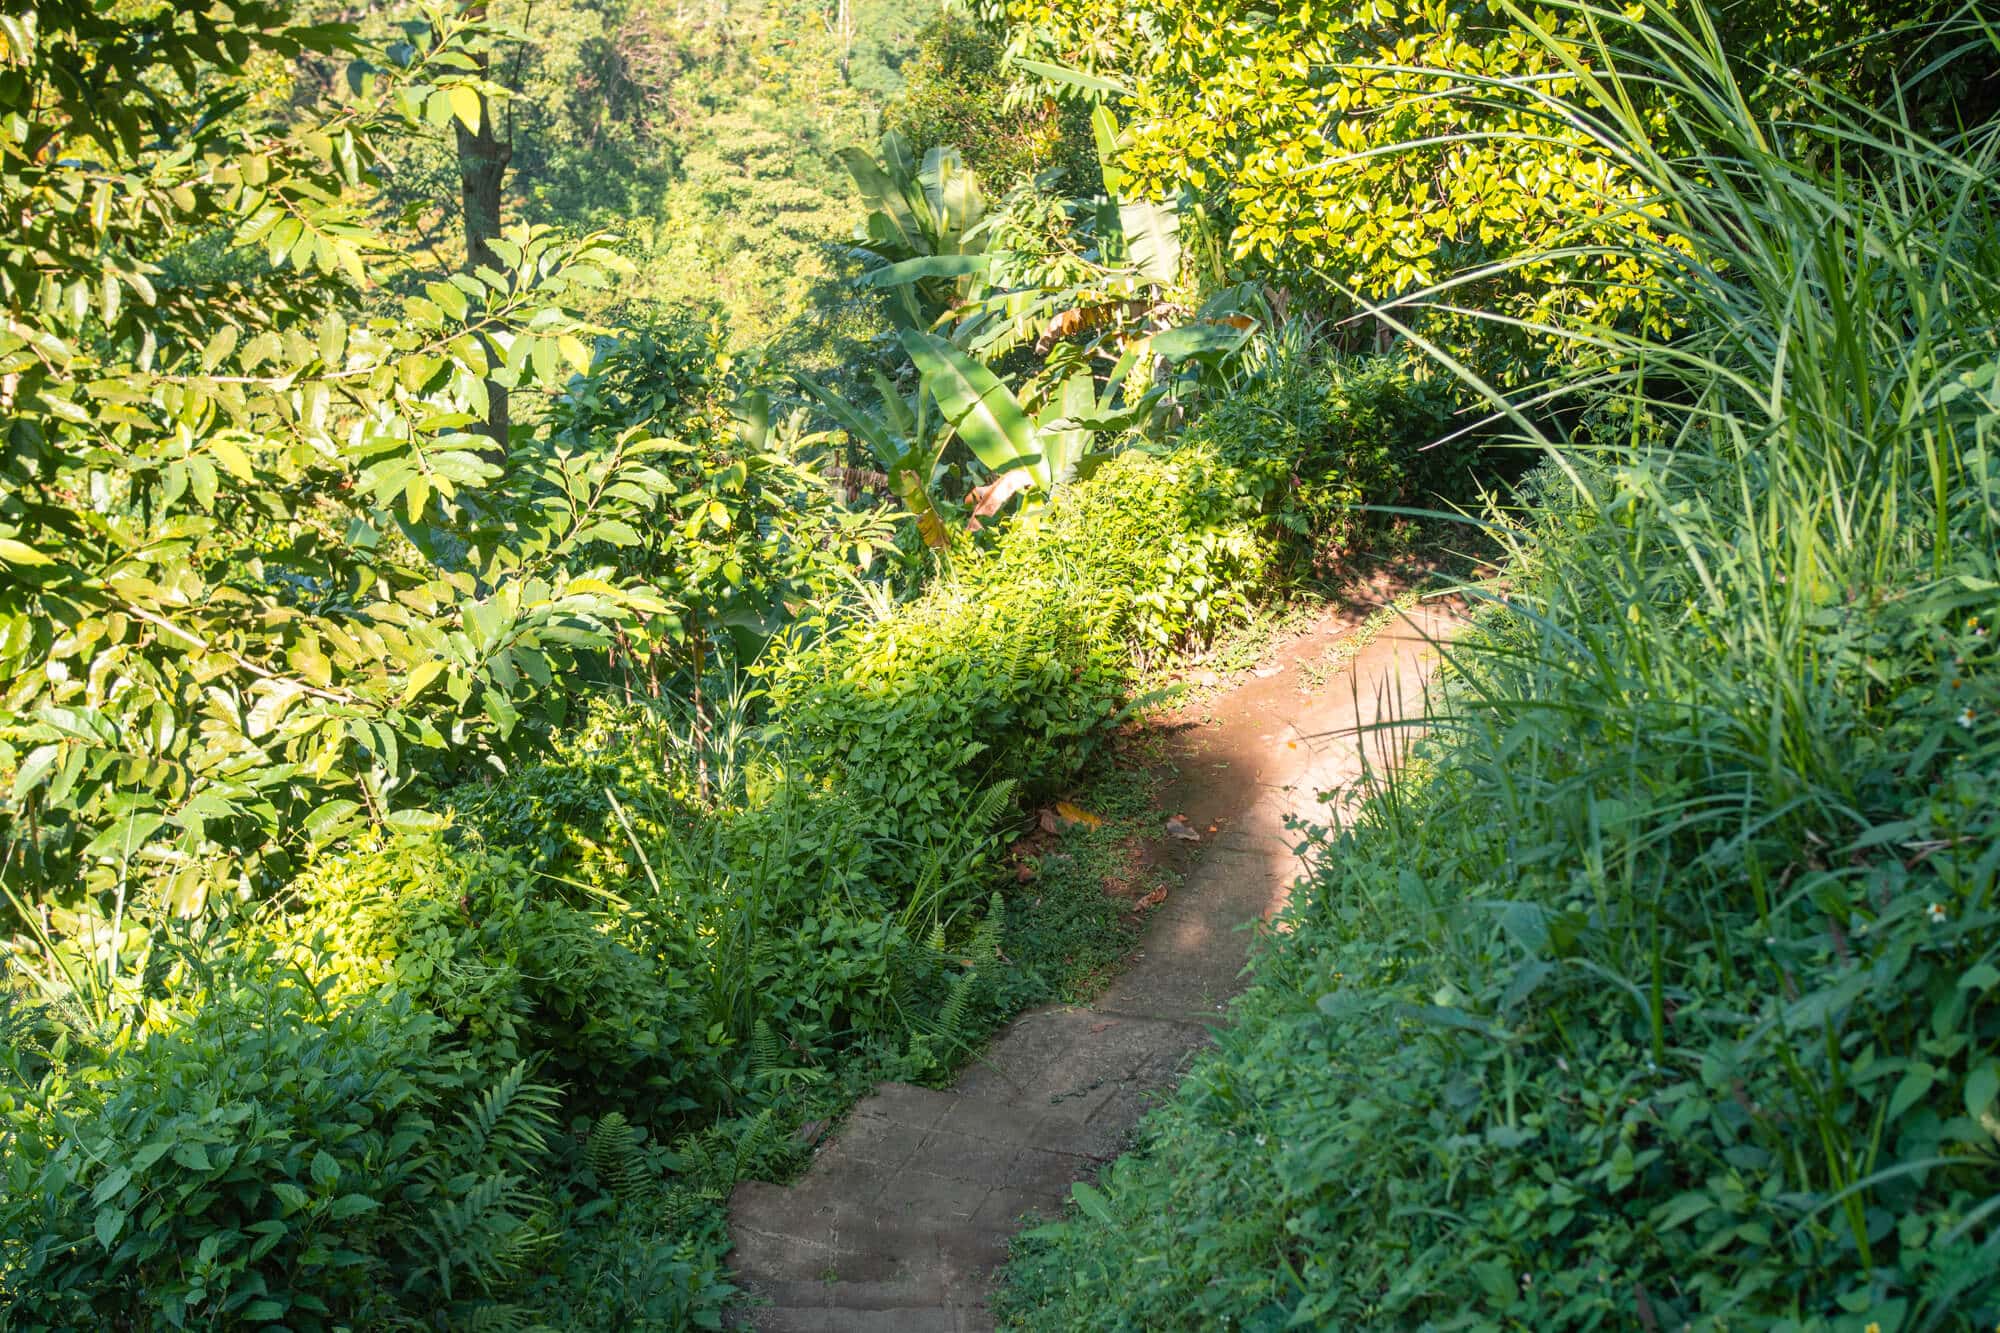 The path down to Sekumpul Waterfall in Bali